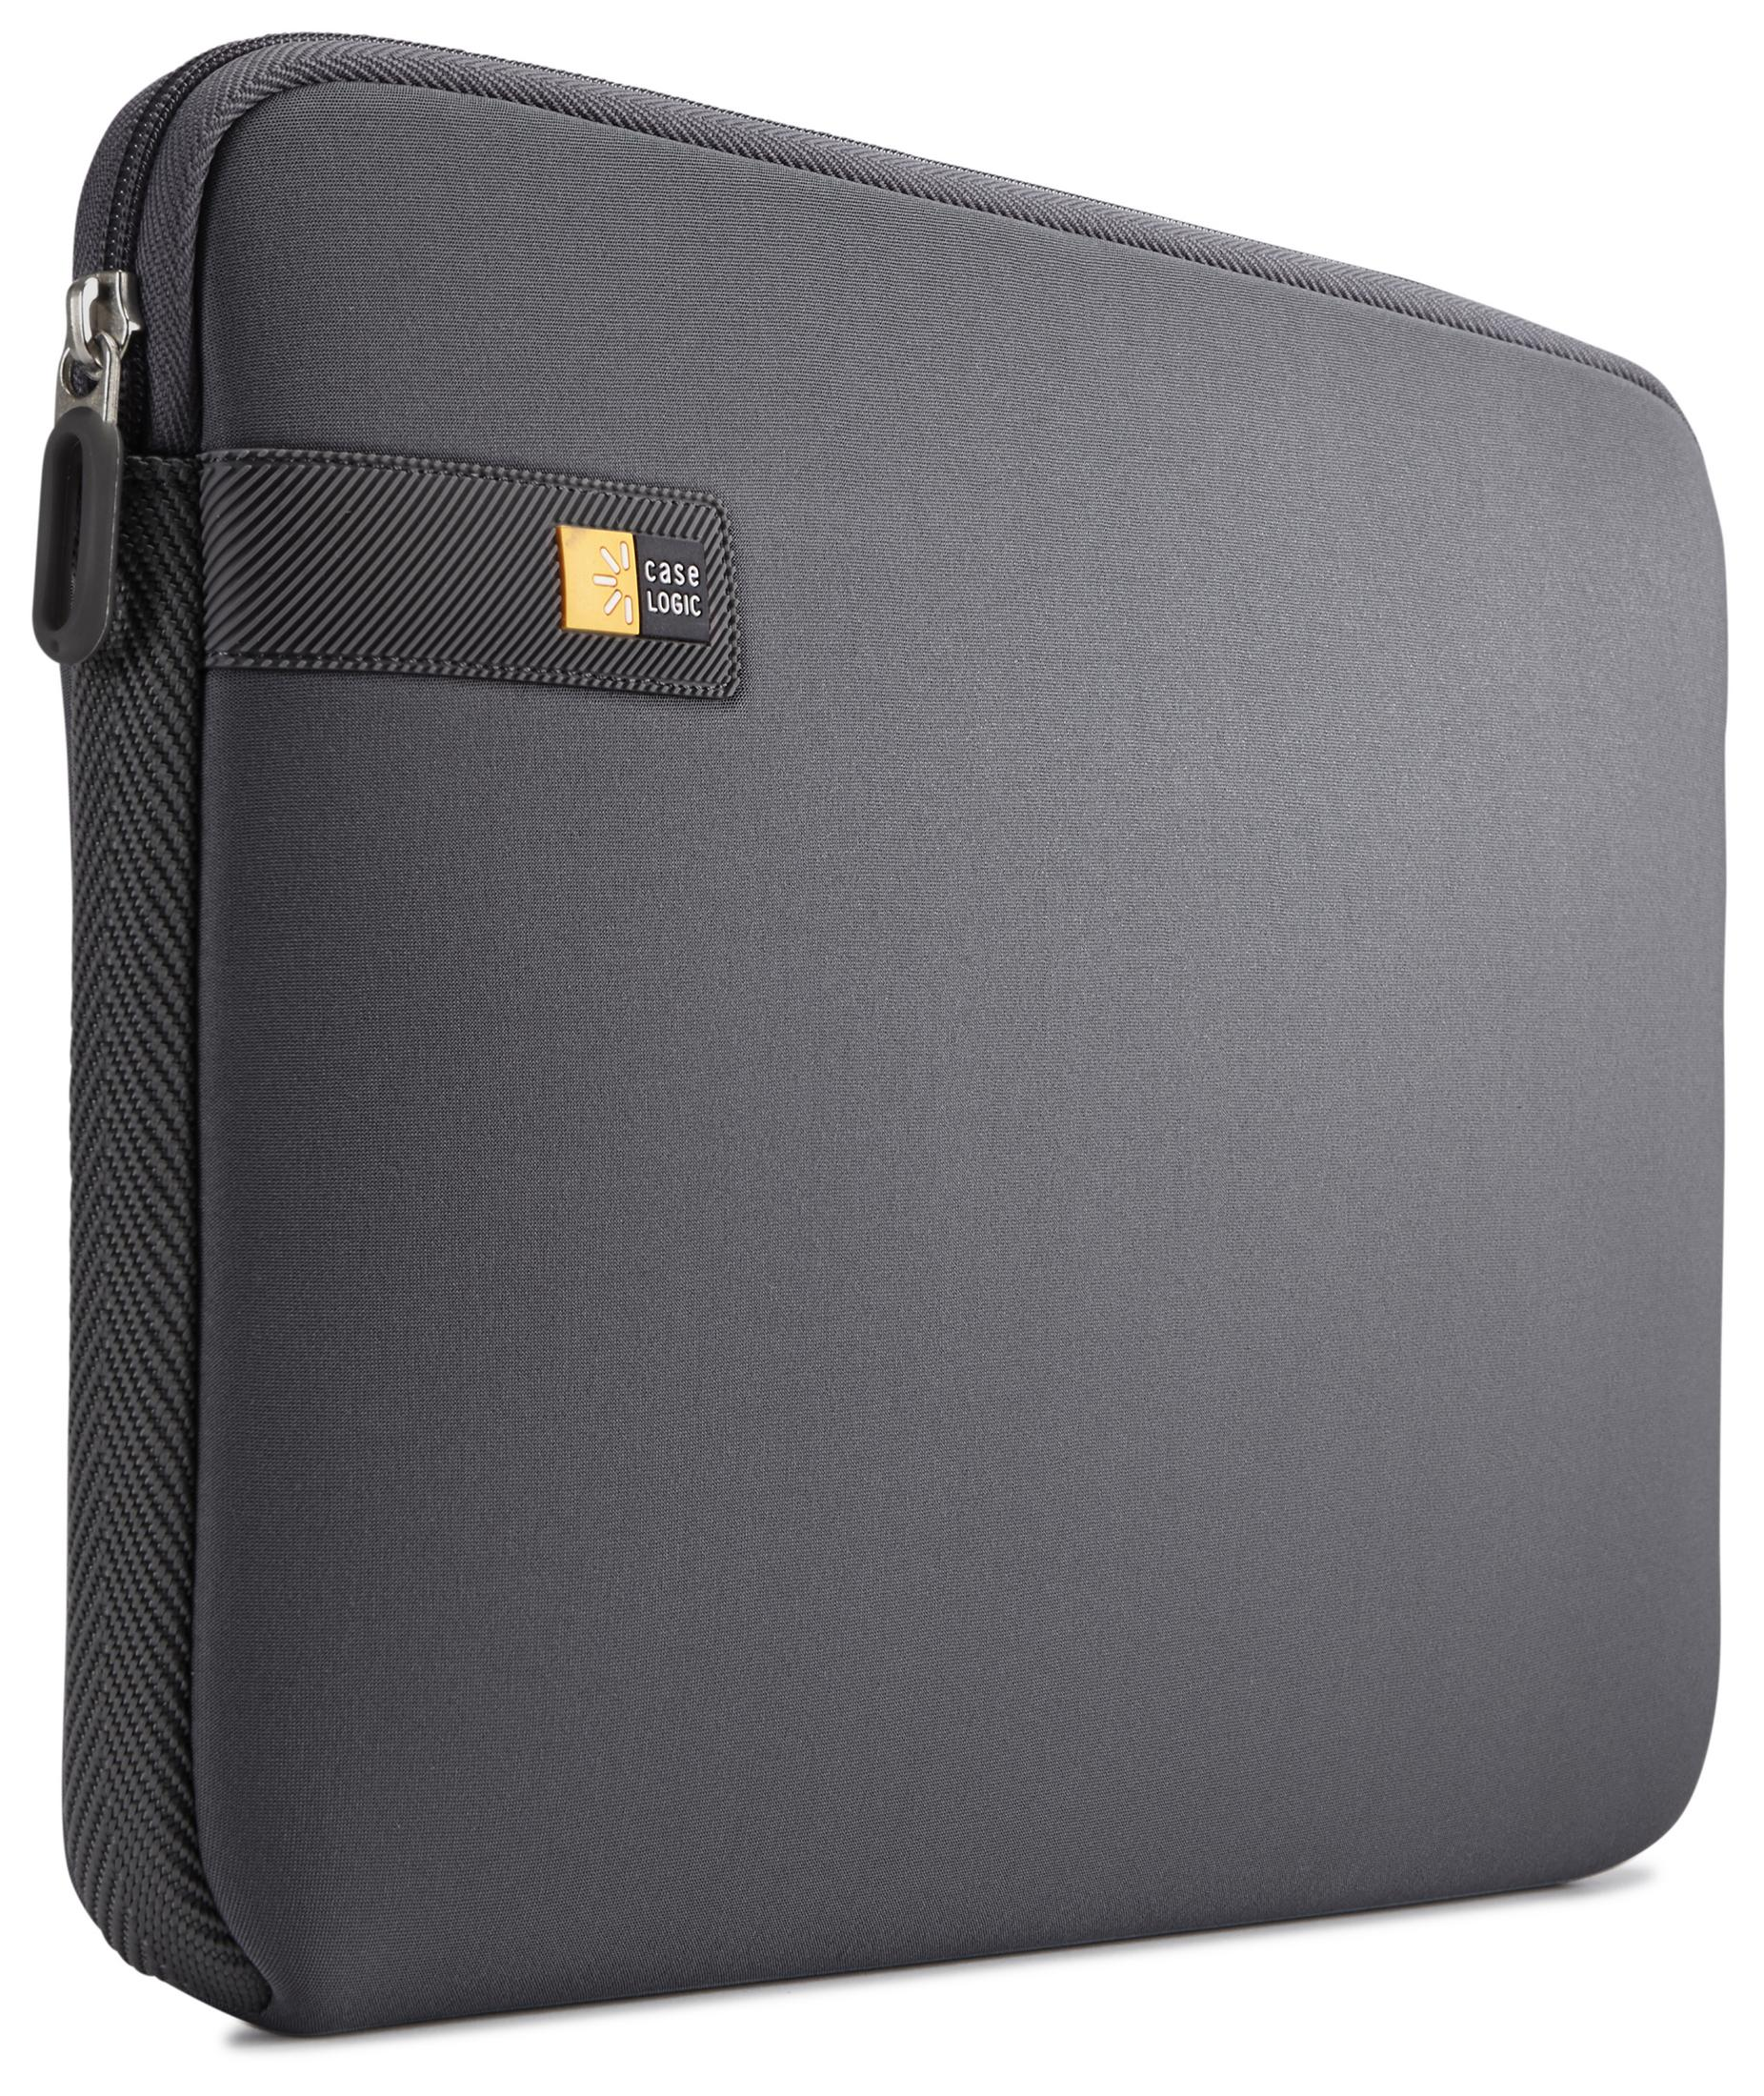 GRAPHITE LOGIC Sleeve für LAPS 16 Notebooktasche CASE Universal SLEEVE NOTEBOOK EVA-Schaum, Grau